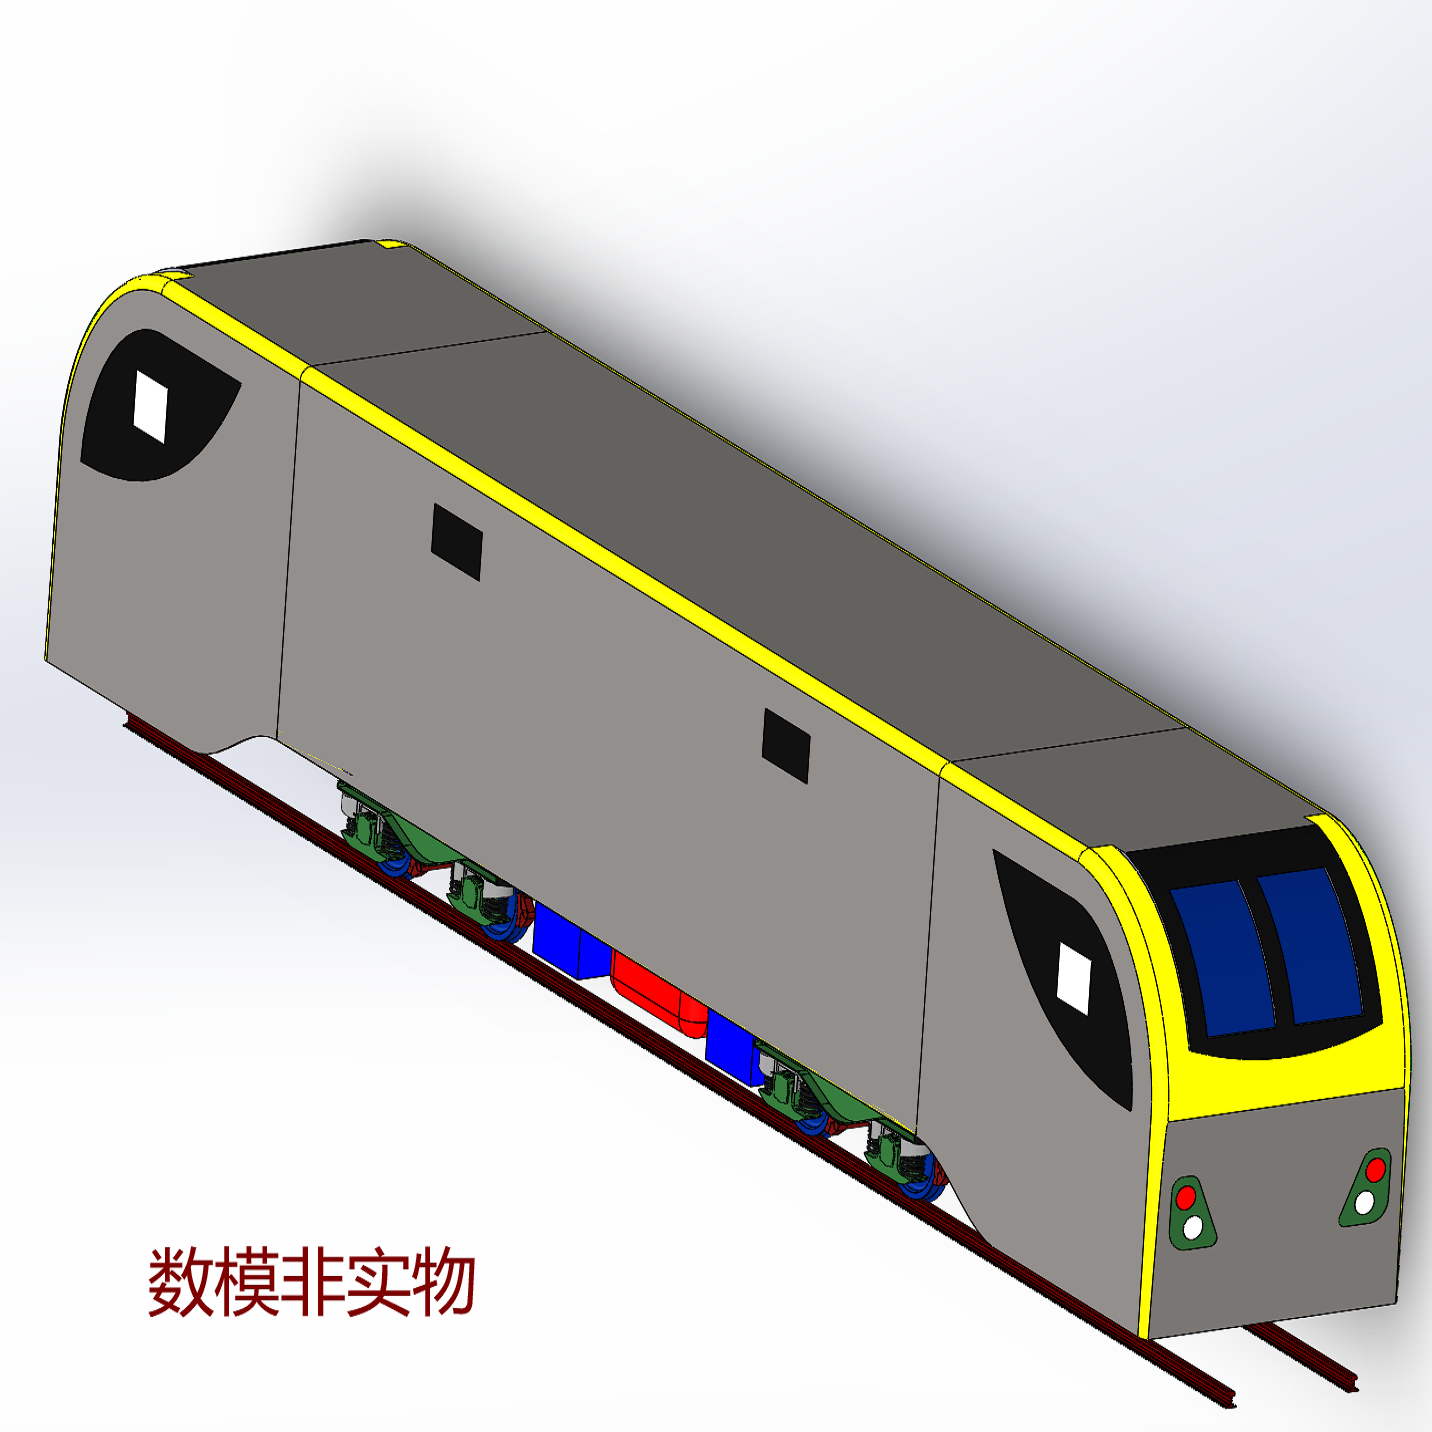 火车厢动车头3D三维简化几何数模型列车箱铁轨铁路Solidworks图纸